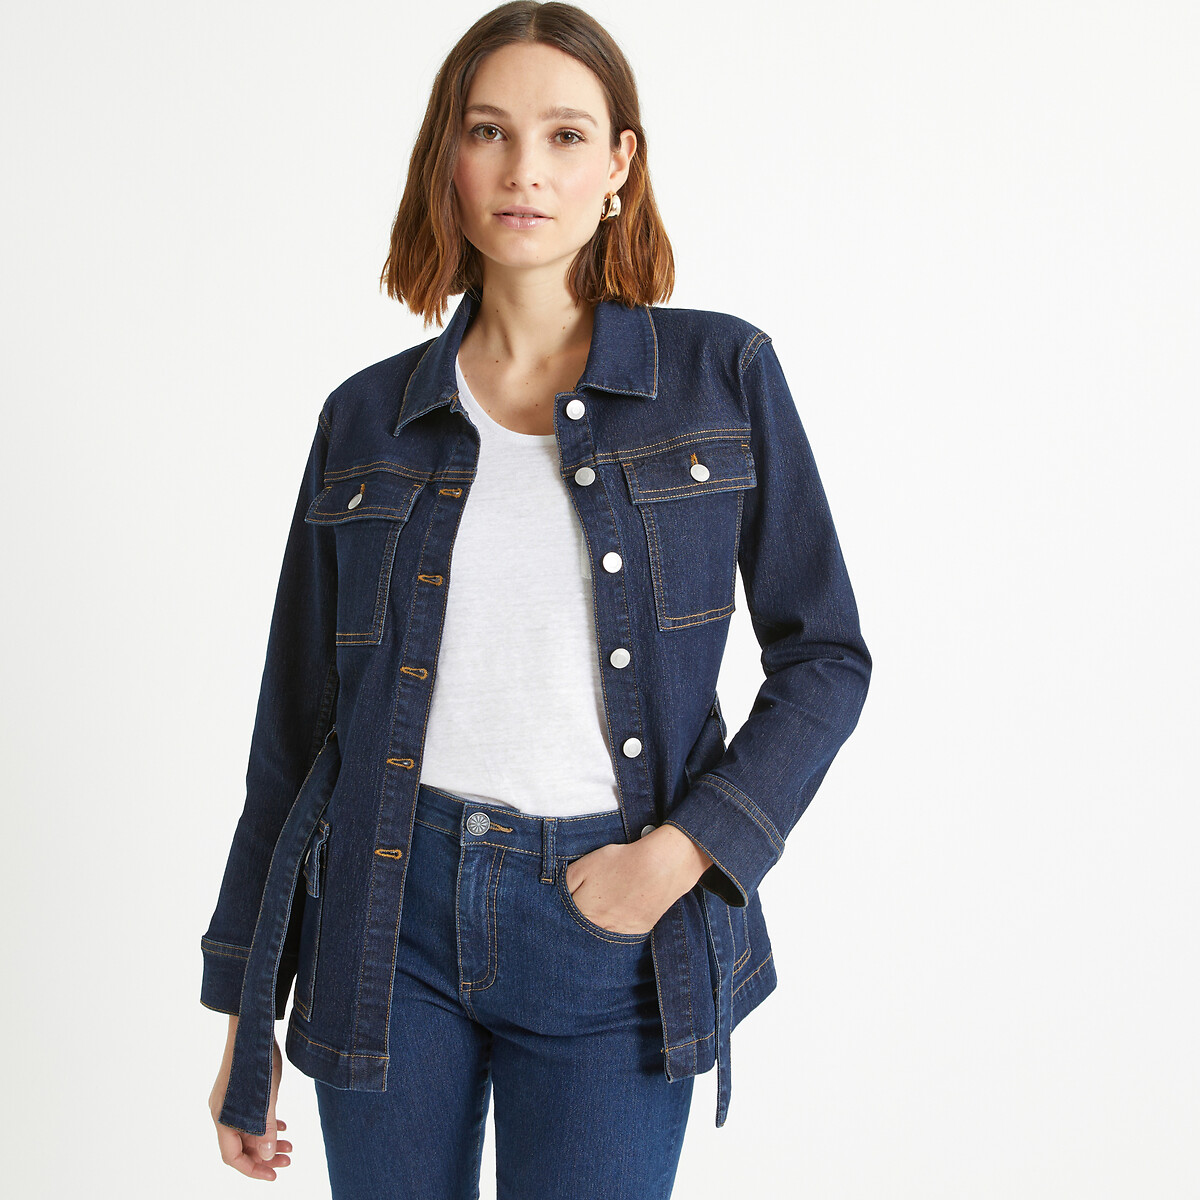 Жакет из джинсовой ткани прямого покроя 48 (FR) - 54 (RUS) синий куртка прямого покроя из джинсовой ткани s синий